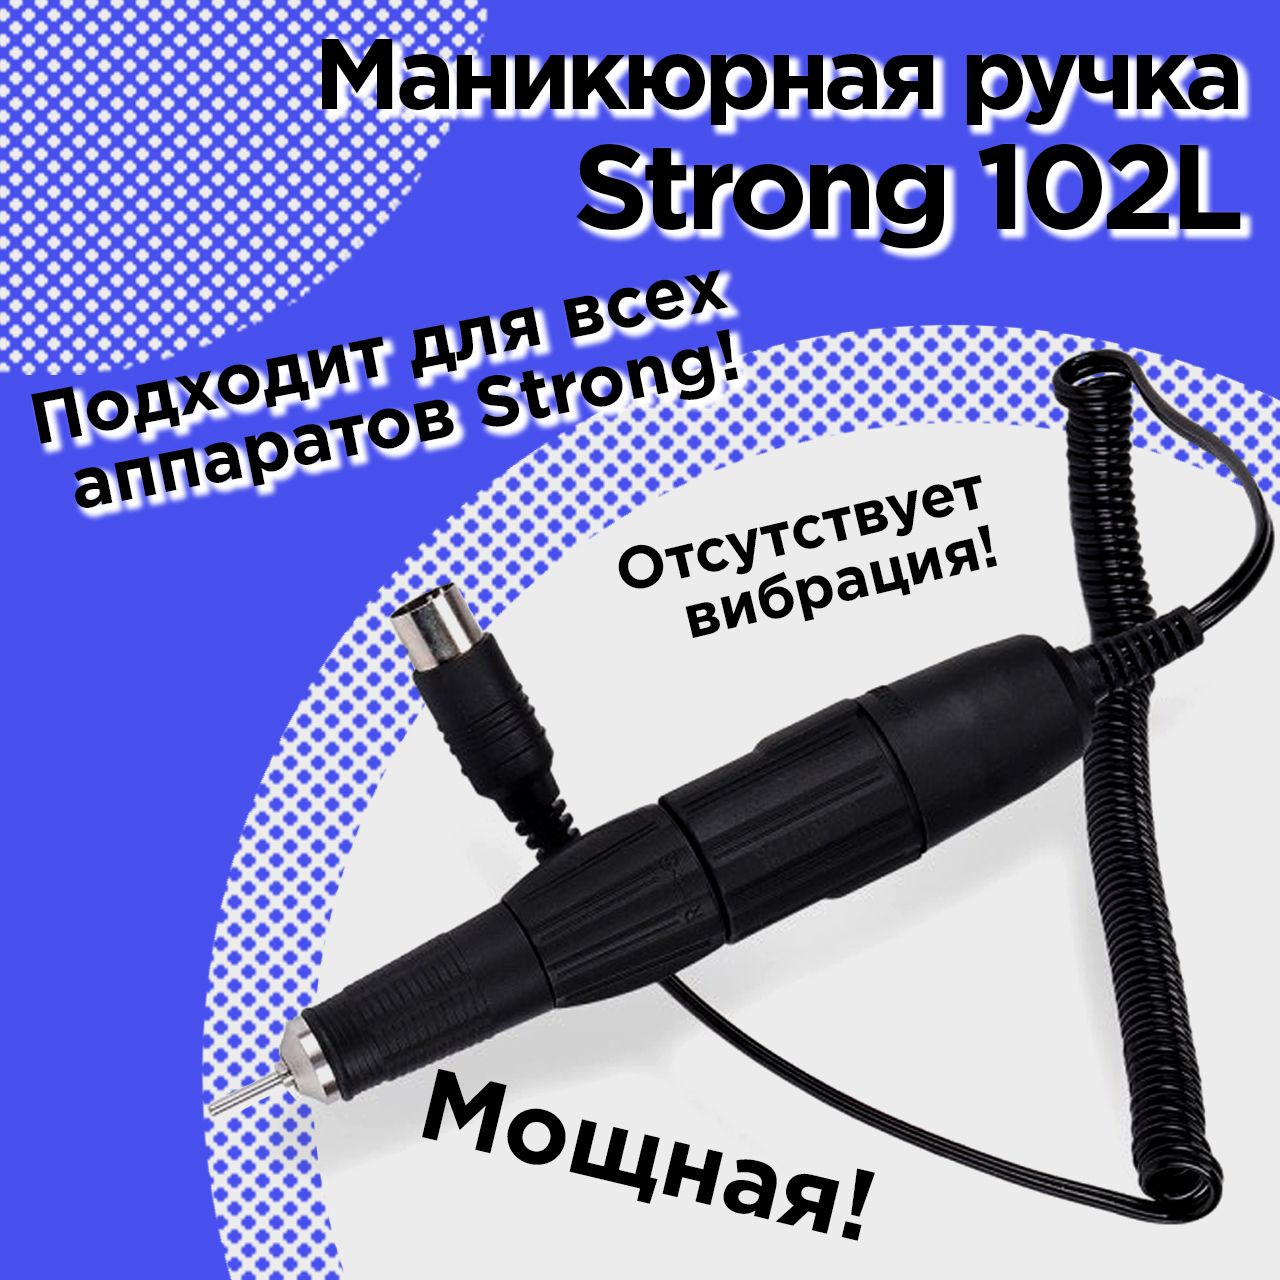 Ручка для маникюрного аппарата Strong 102L Китай папка для тетрадей а4 селфи кот 34 30 10см пластик молния выруб ручка расширение